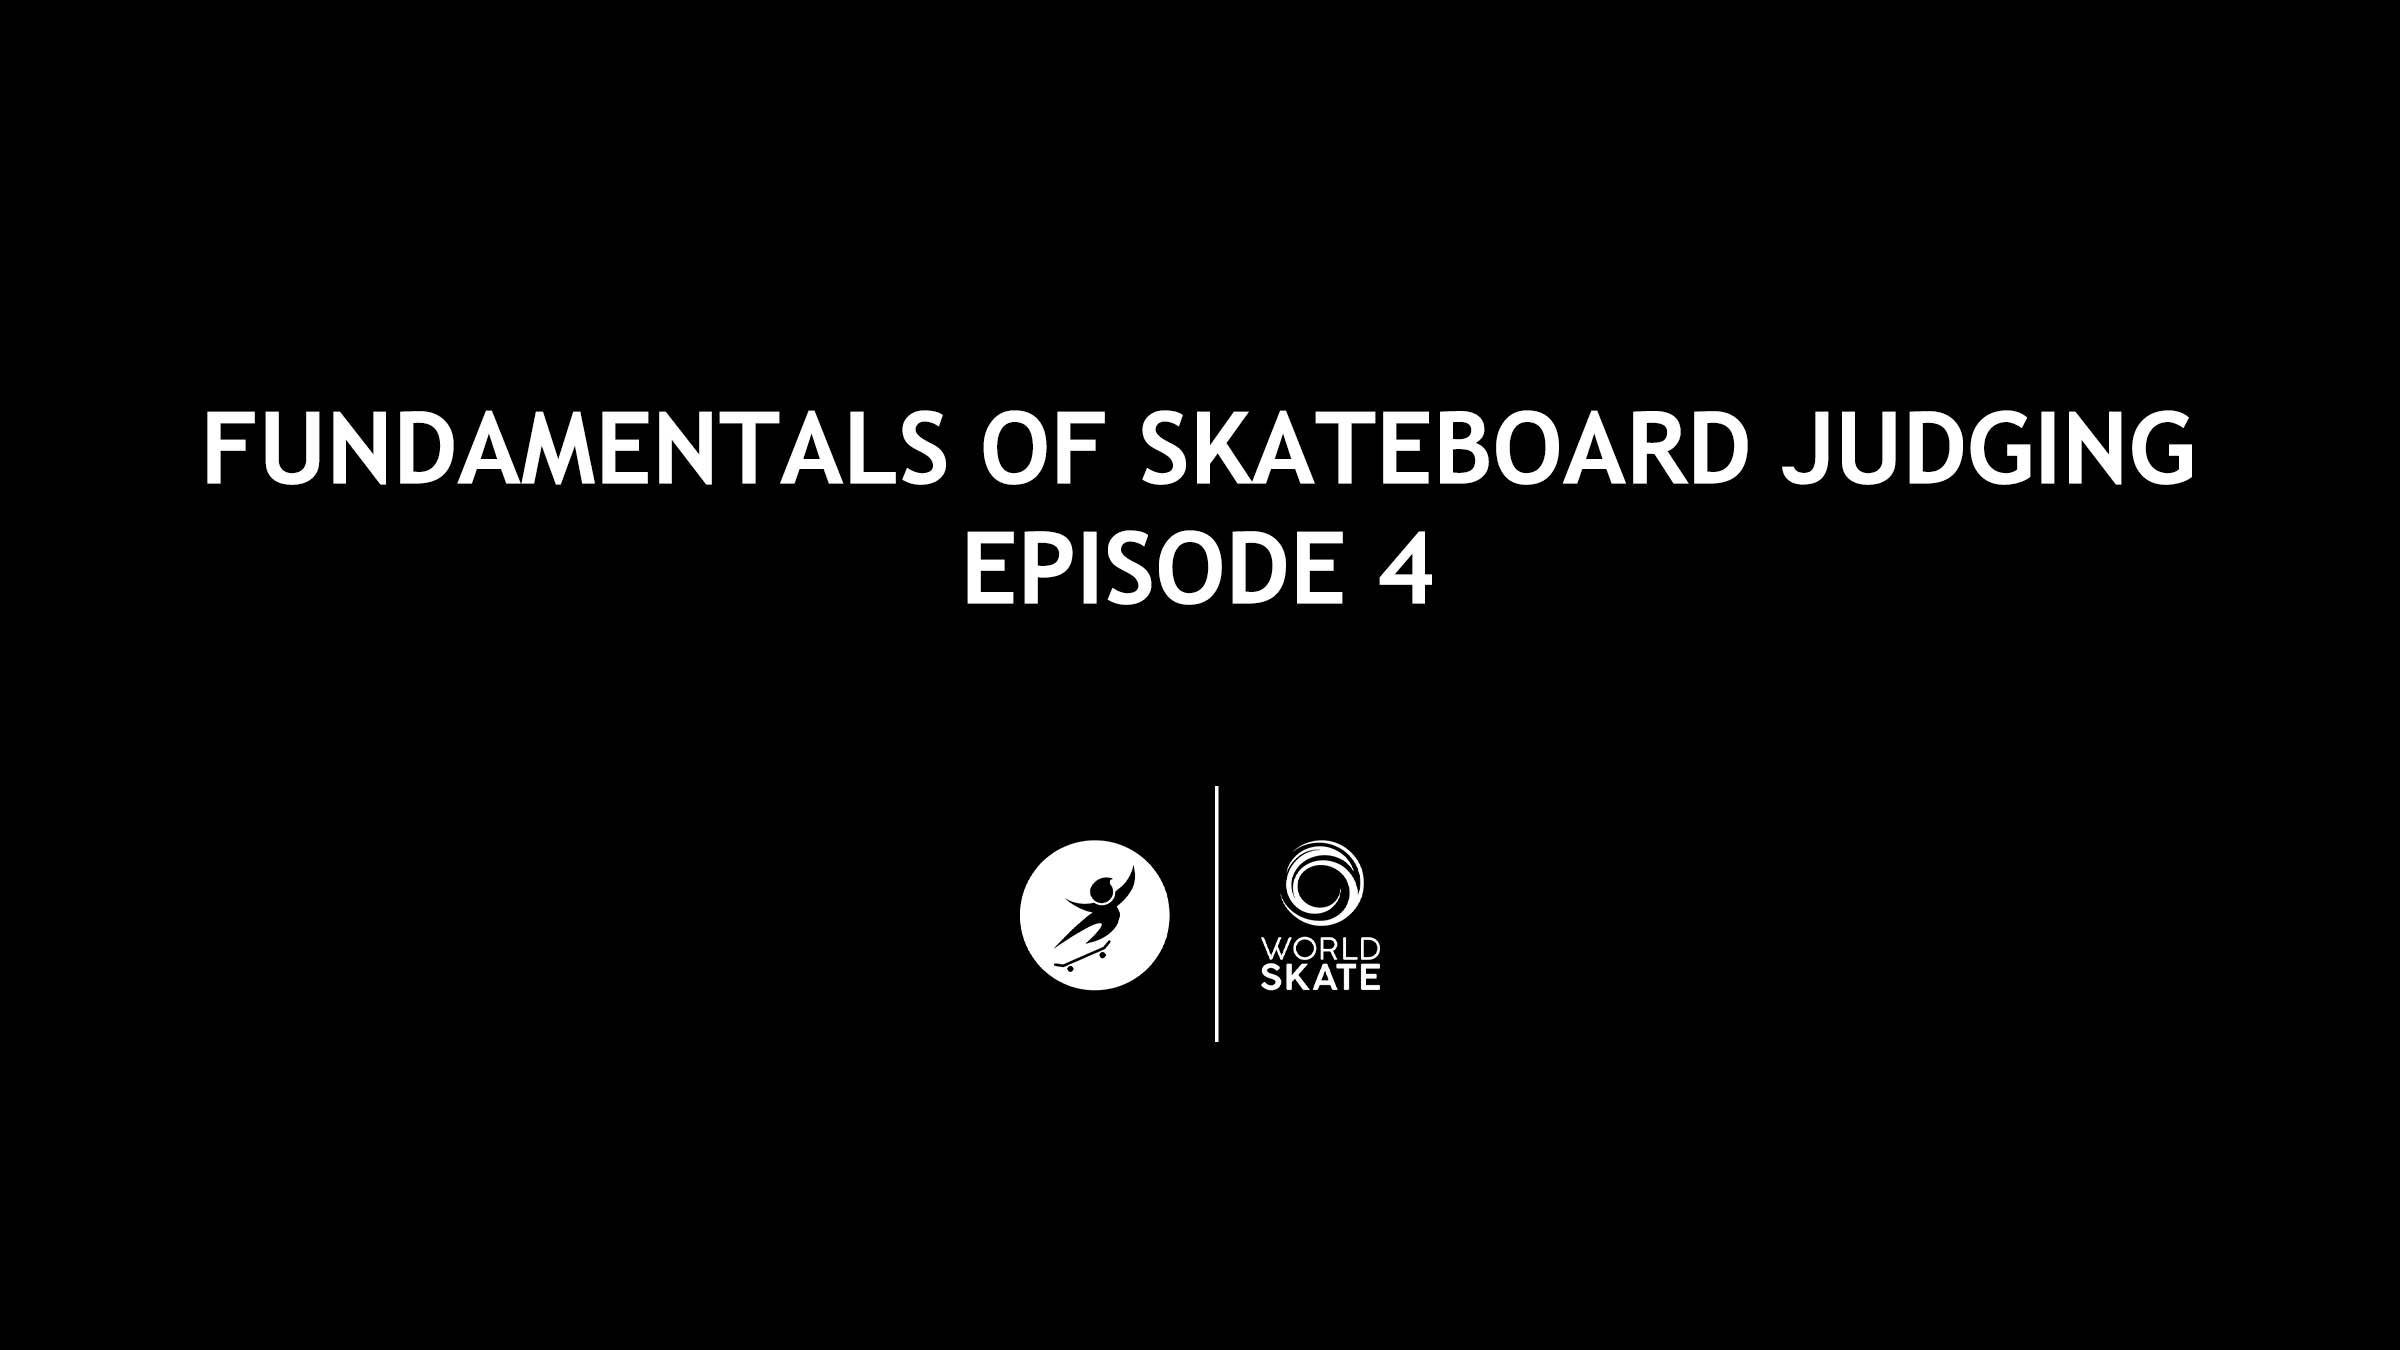 images/Skateboard_Judging_E-Learning/FUNDAMENTALS_OF_SKATEBOARD_JUDGING_EPISODE_4_16_9.jpg